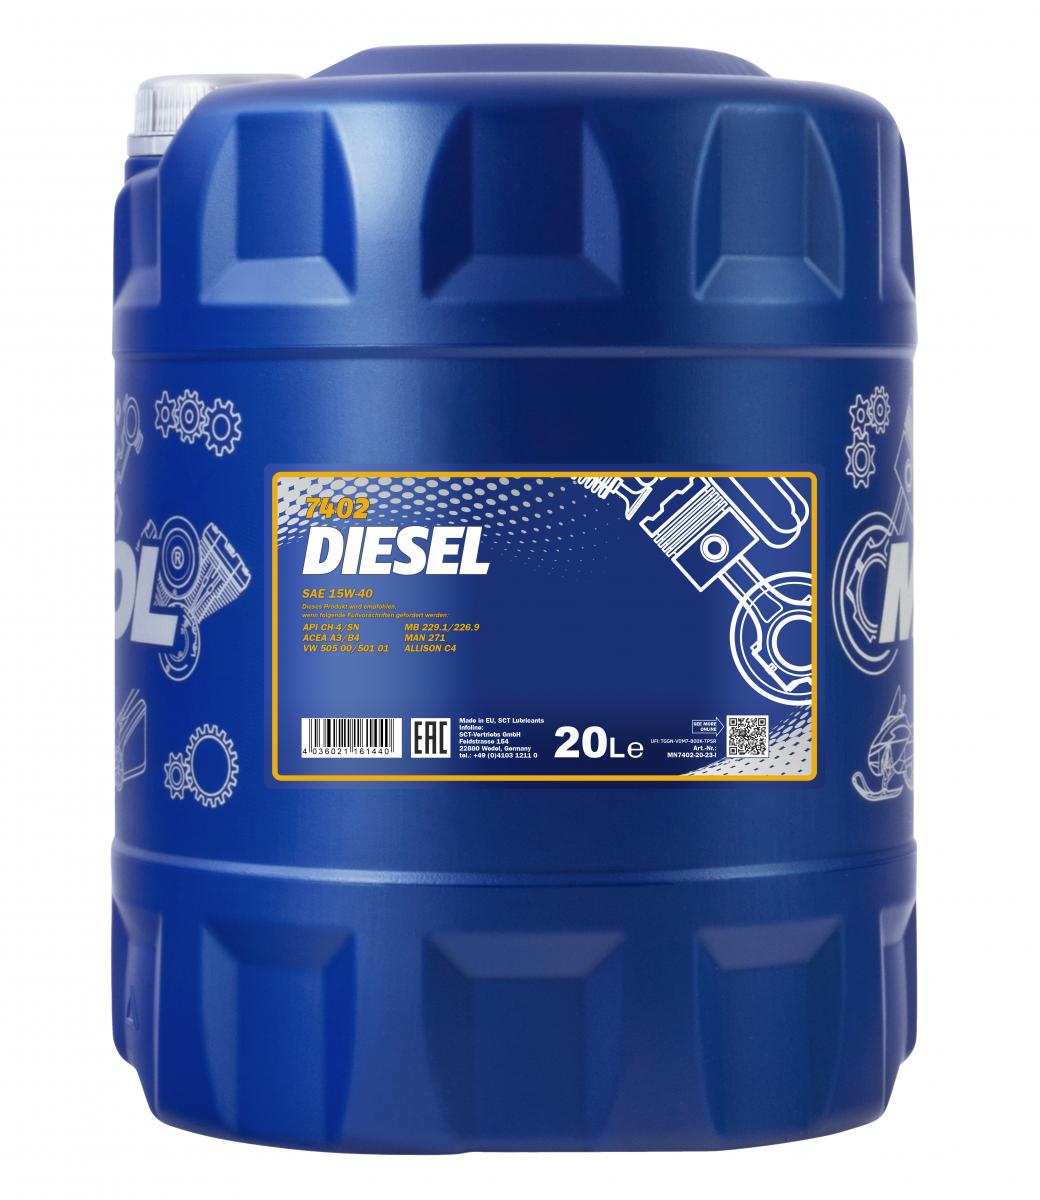 60 Liter (3x20) MANNOL Diesel 15W-40 CH-4 SL 15W40 Motoröl ÖL 4036021161440